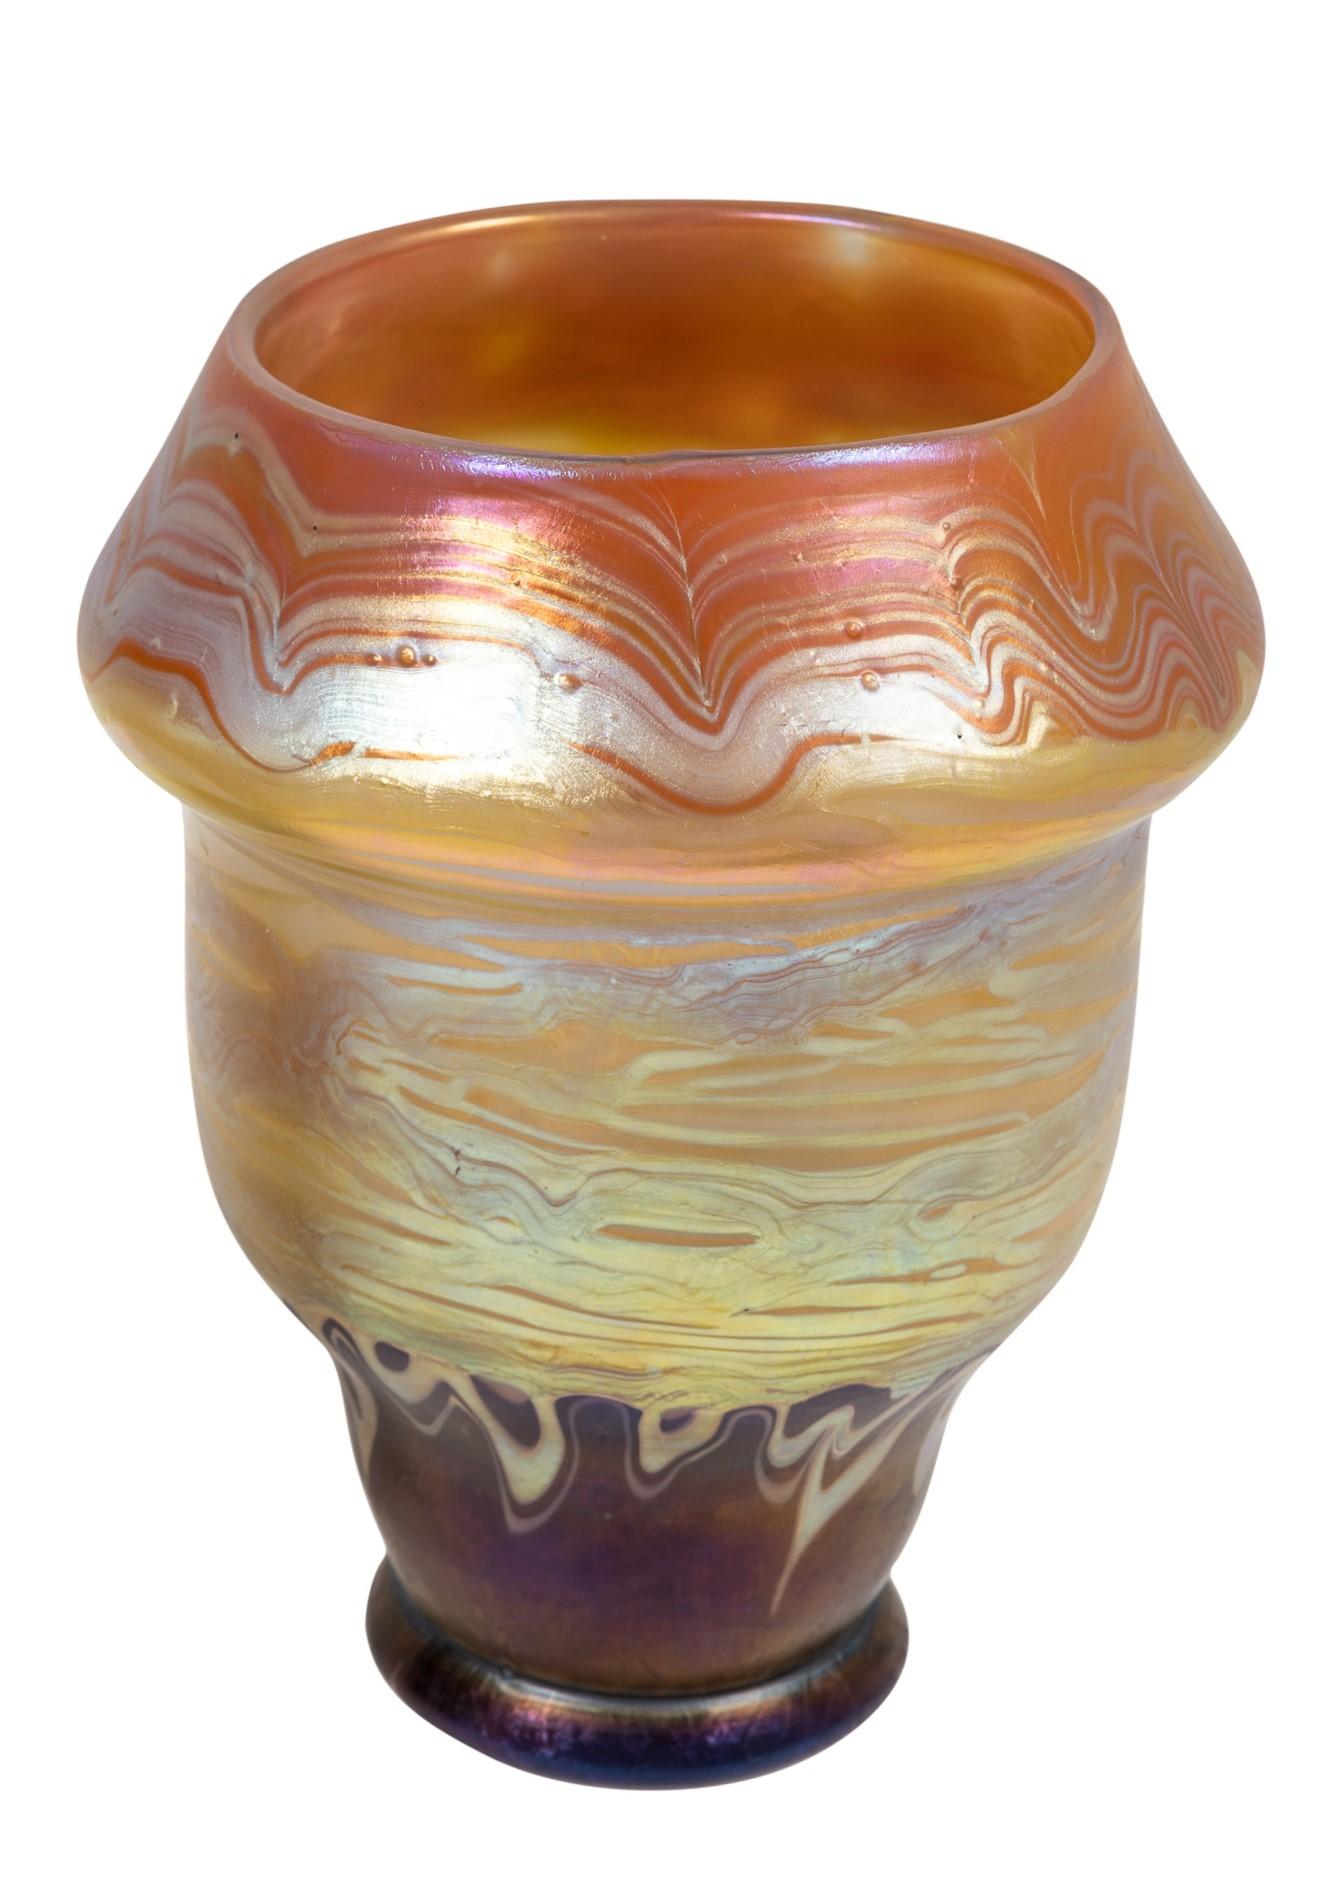 Jugendstil Bohemian Glass Vase Loetz PG 358 Decoration circa 1900 Art Nouveau Signed For Sale